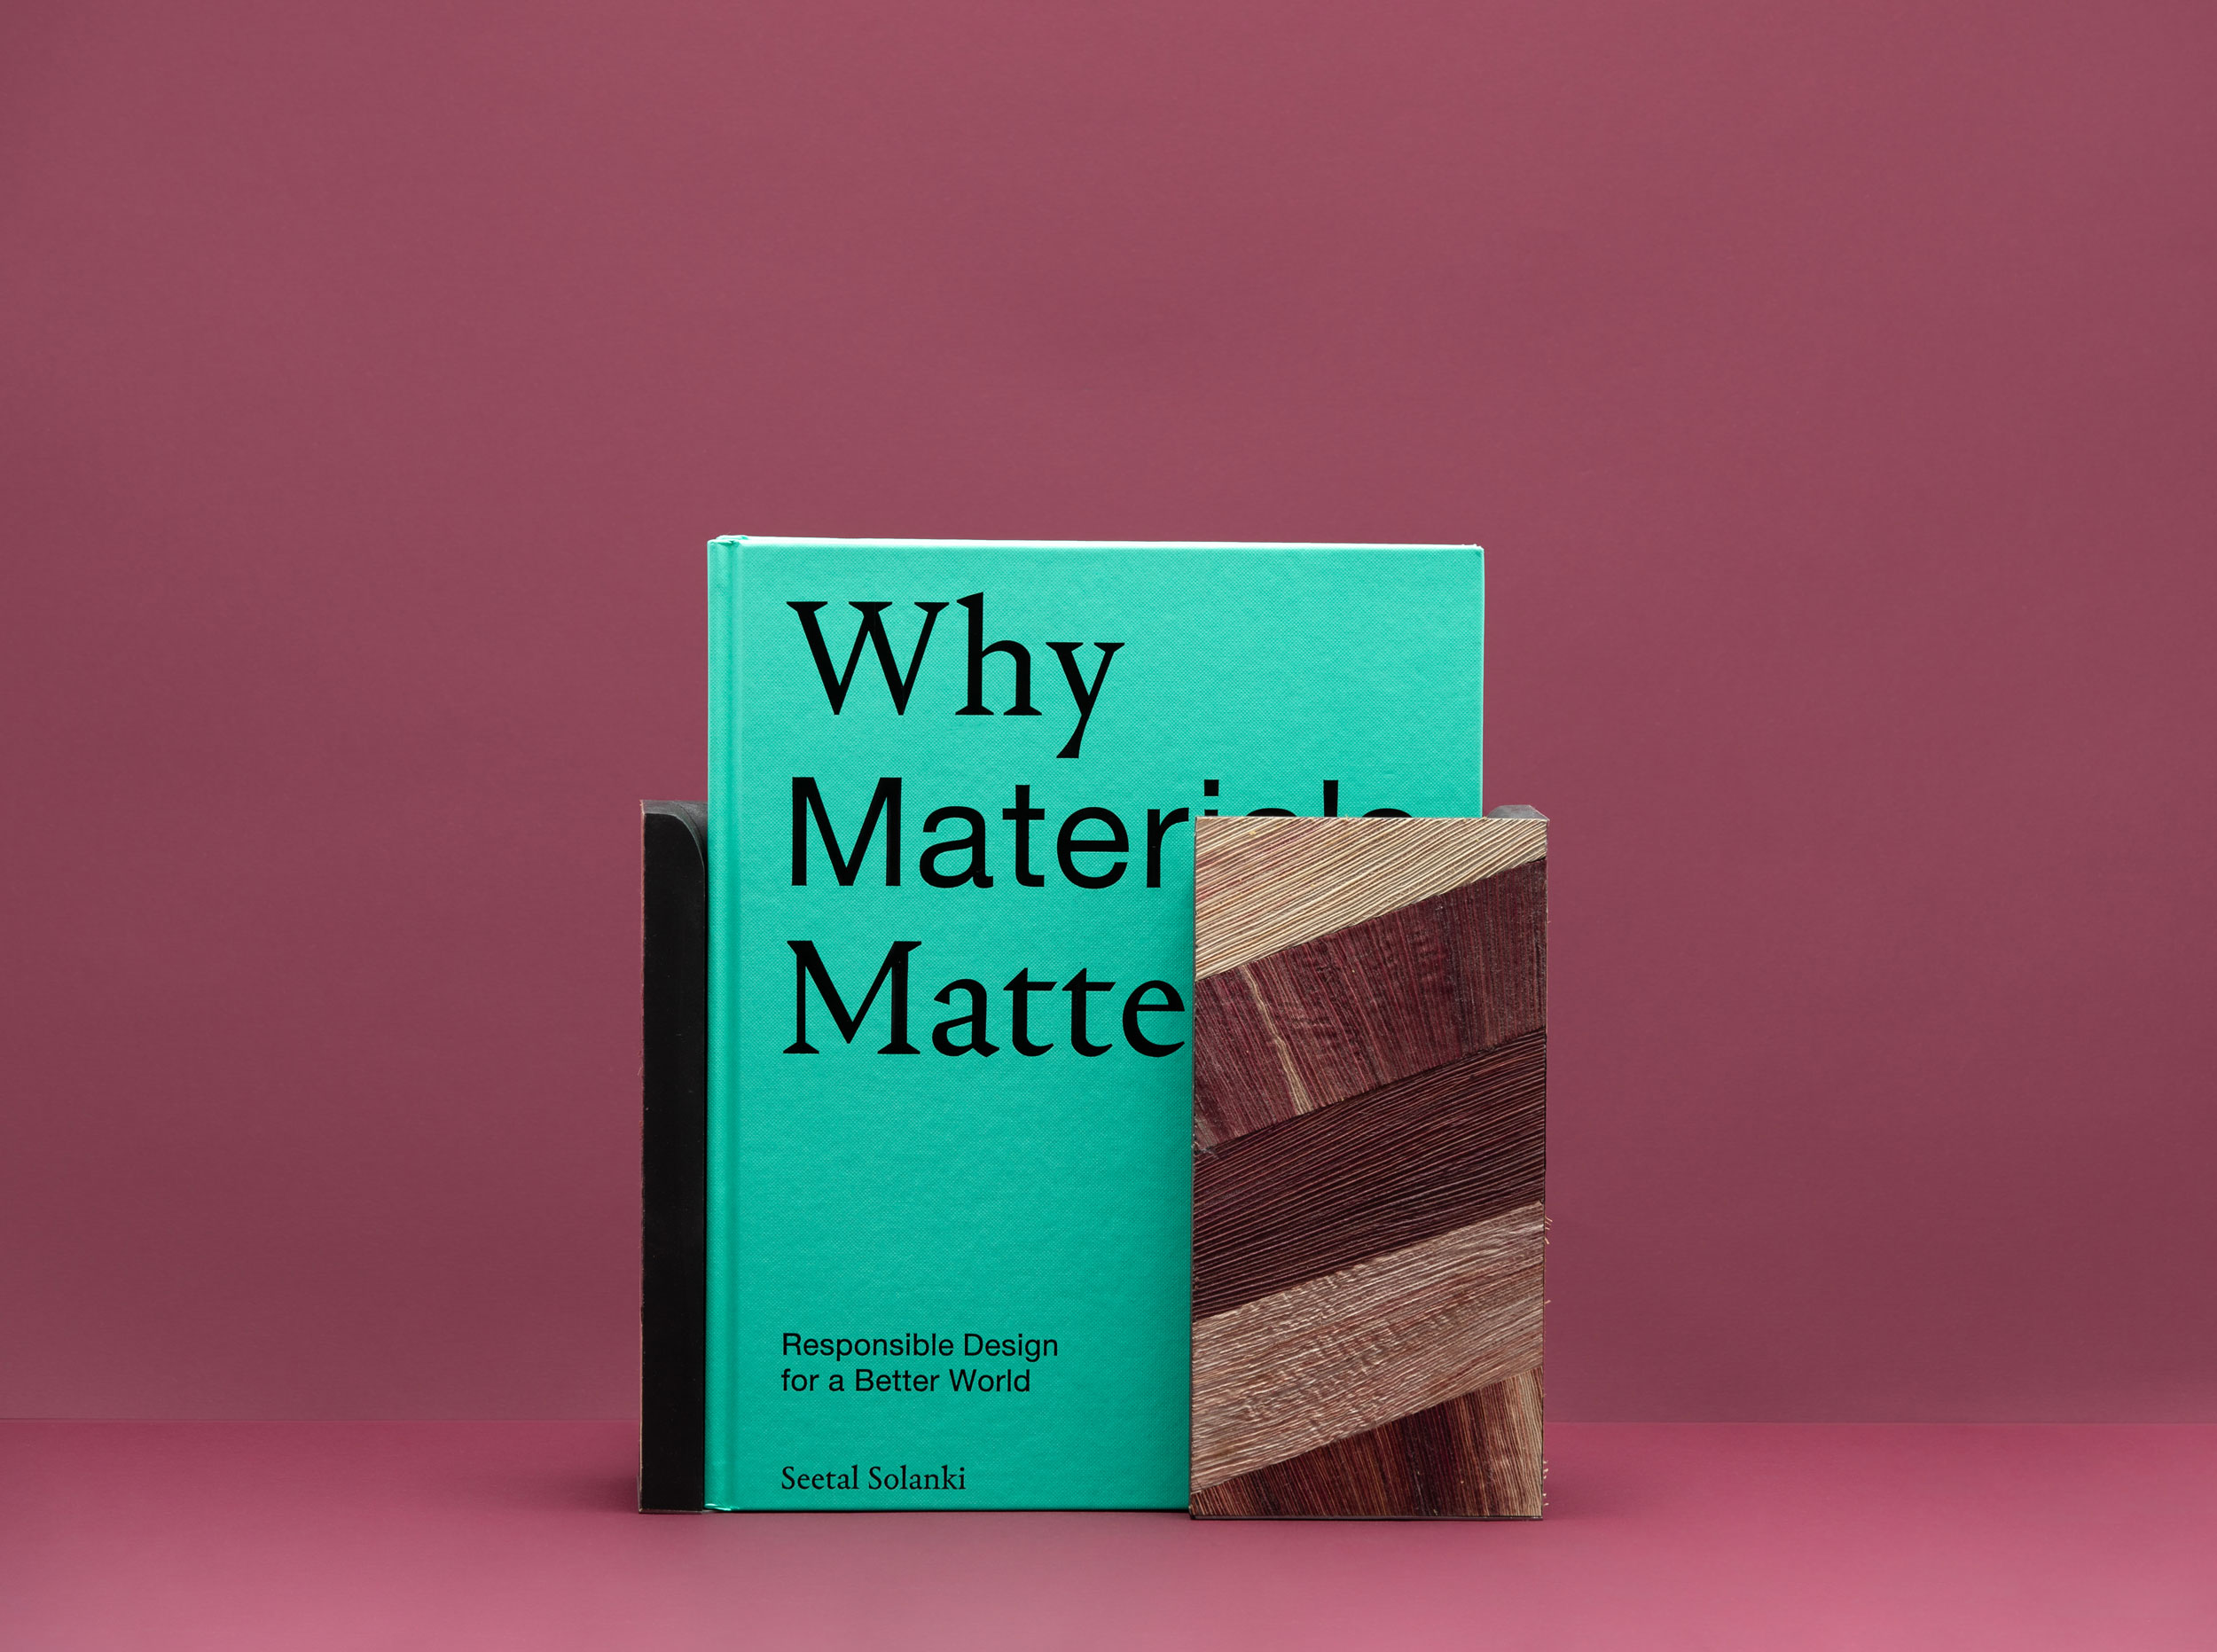 Ma-tt-er - Why Materials Matter Book Launch + Exhibition